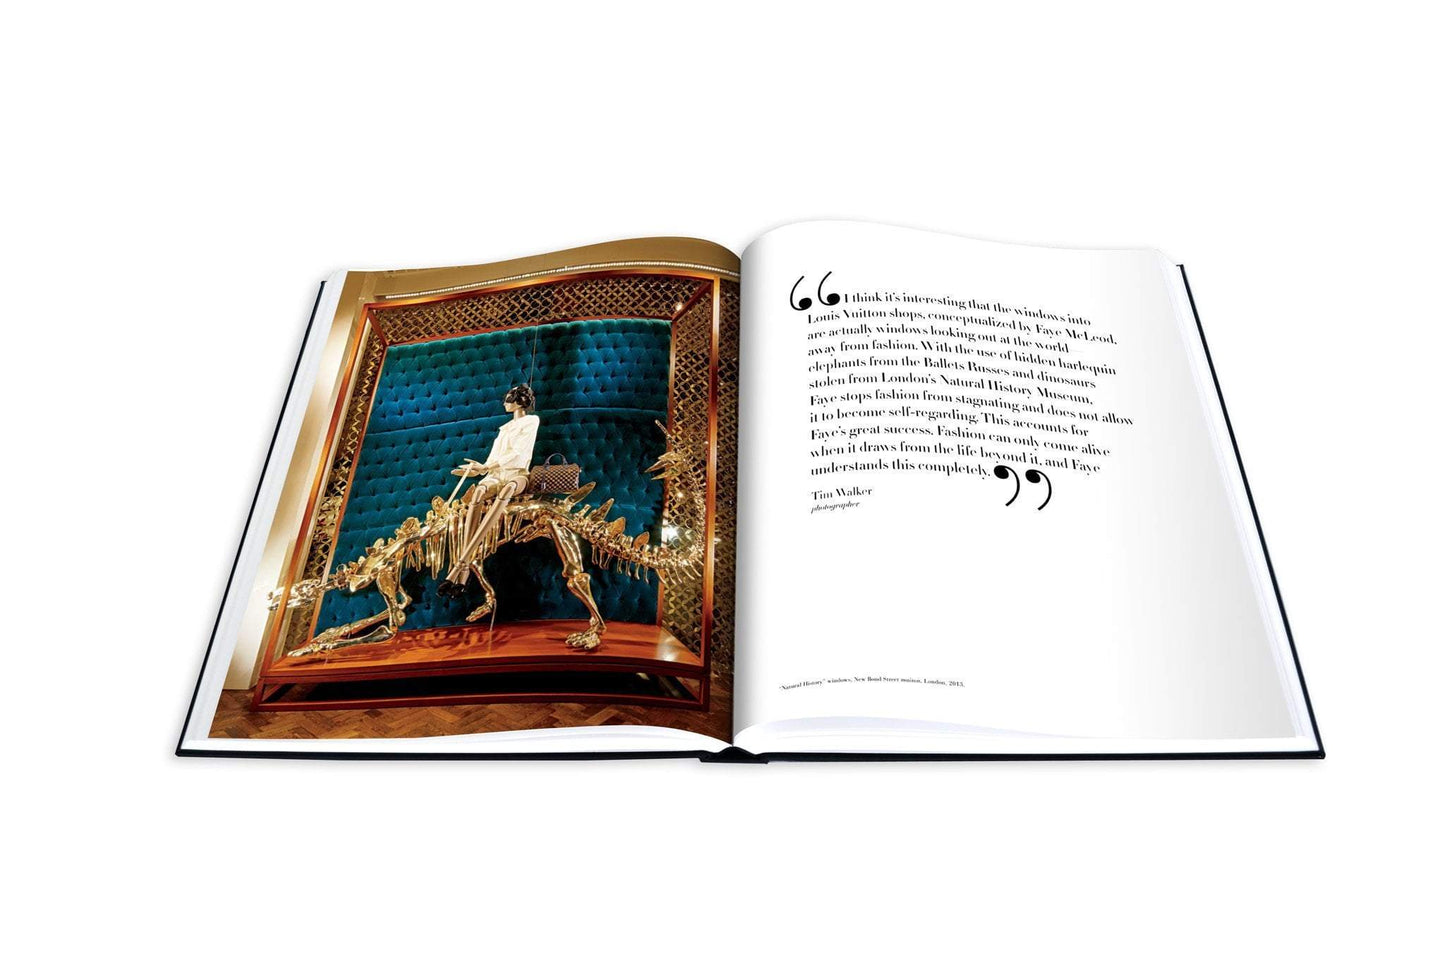 Buchen Sie Louis Vuitton Windows: Impossible Collection